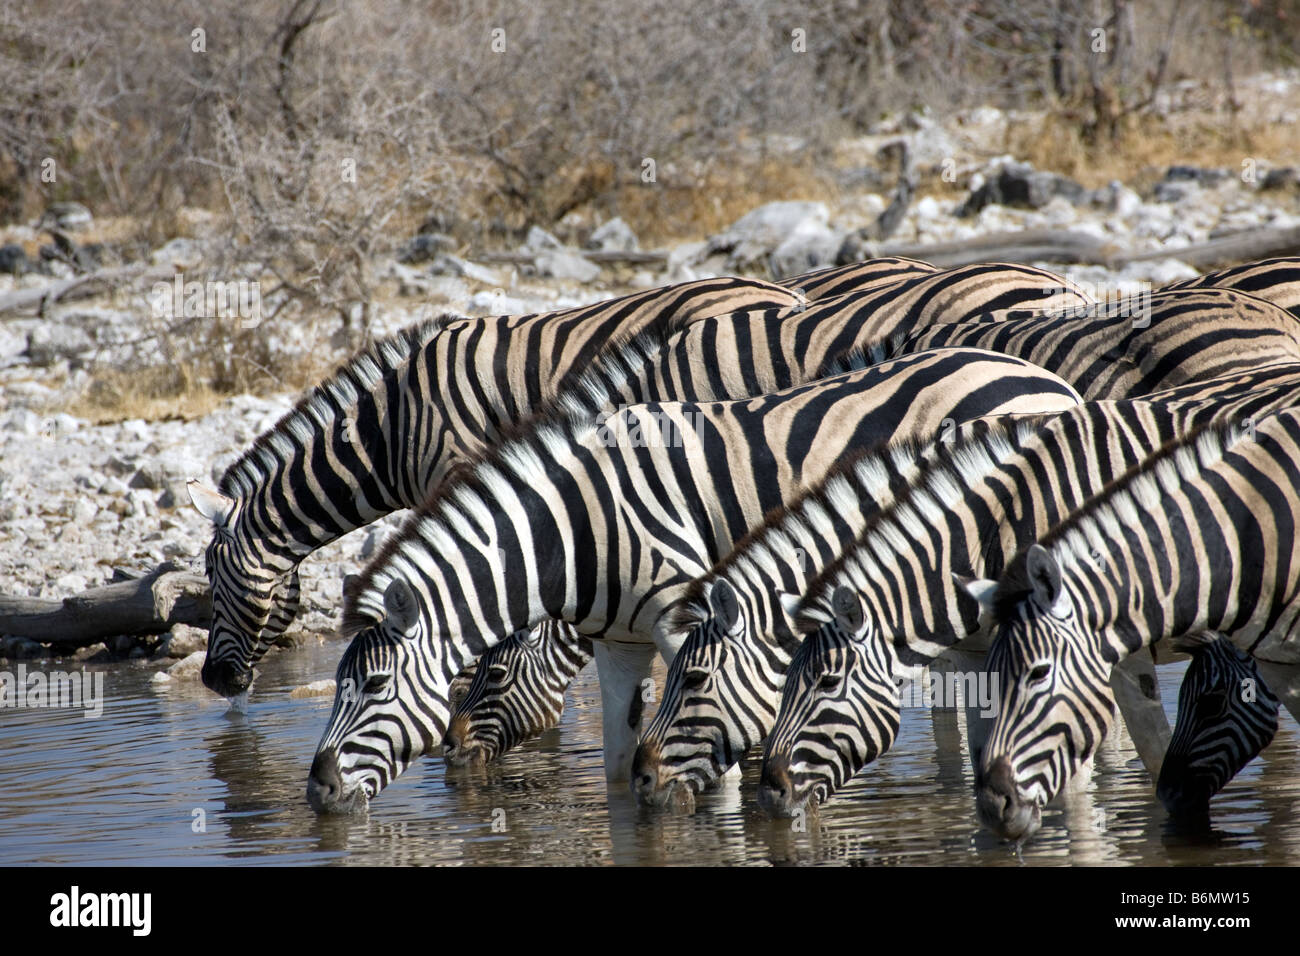 Plains Zebras Drinking at Waterhole, Etosha National Park, Namibia Stock Photo